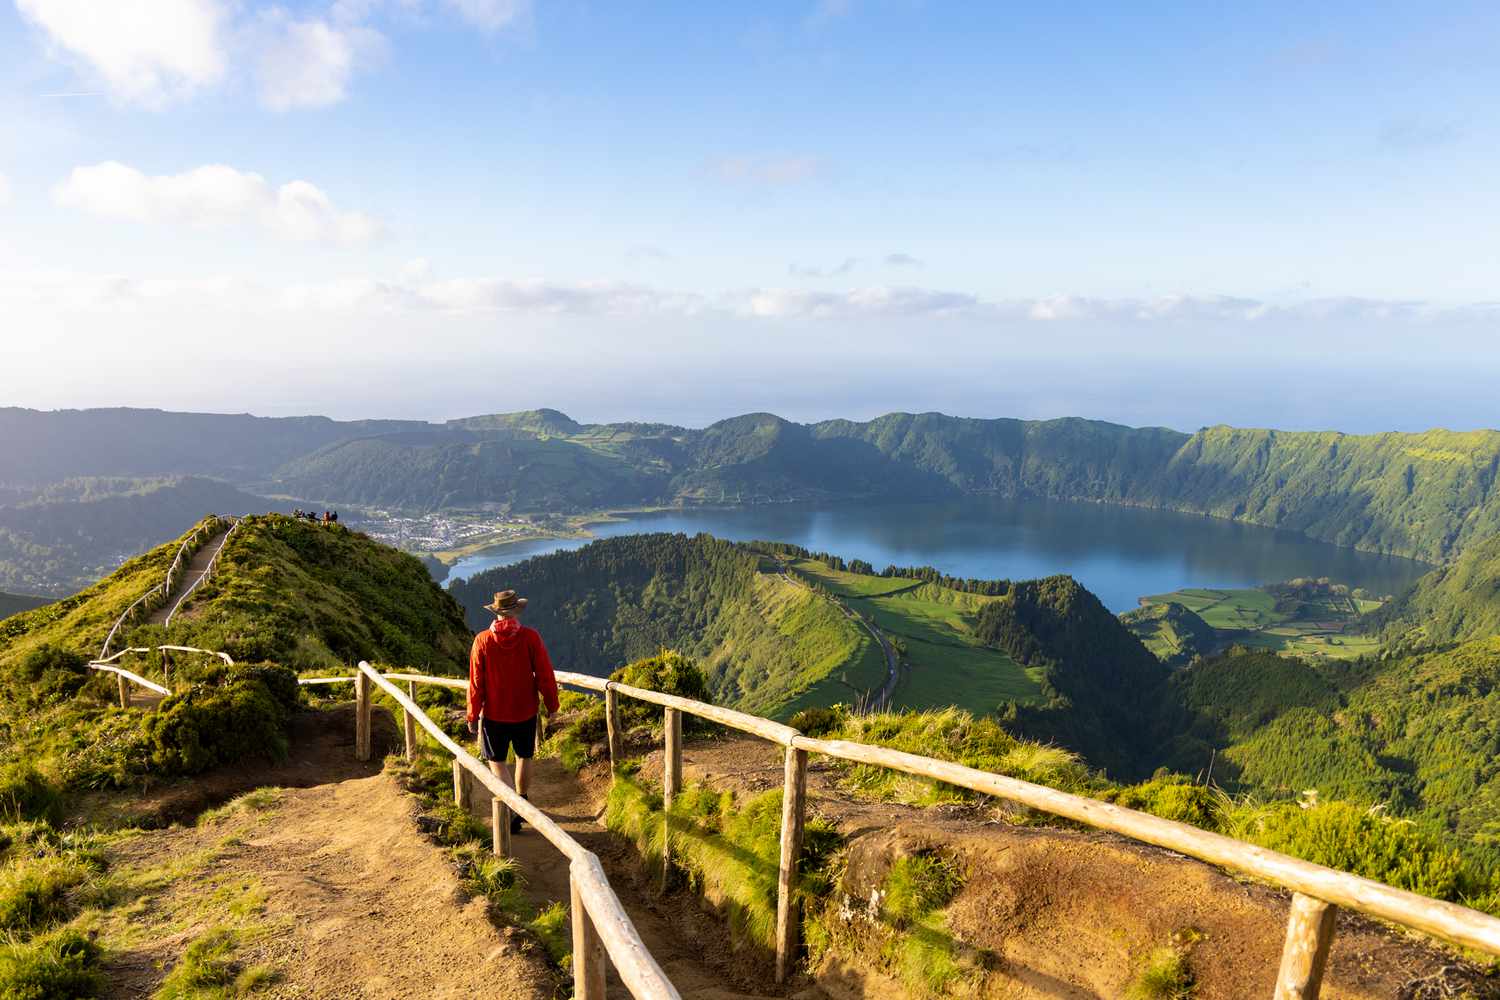 ¡Azores- Ponta Delgada, 8 días y 7 noches en Hotel 4* con Desayuno o Media Pensión! Incluye Vuelos + Traslados + Seguro de viaje